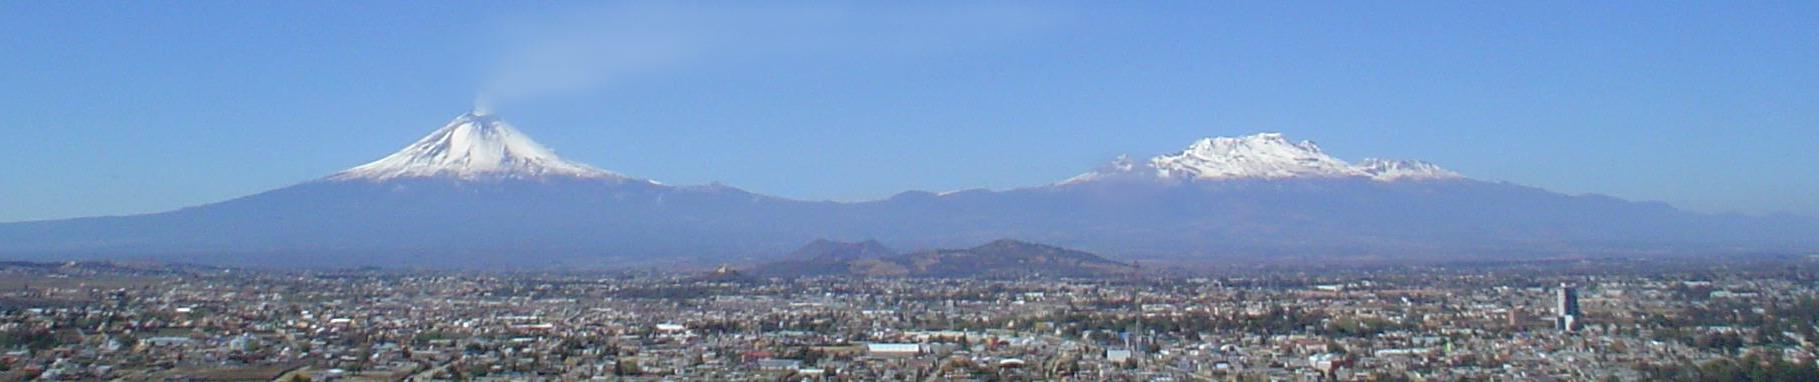 Popocatepetl e Iztaccihuatl desde Puebla. I.G.P.